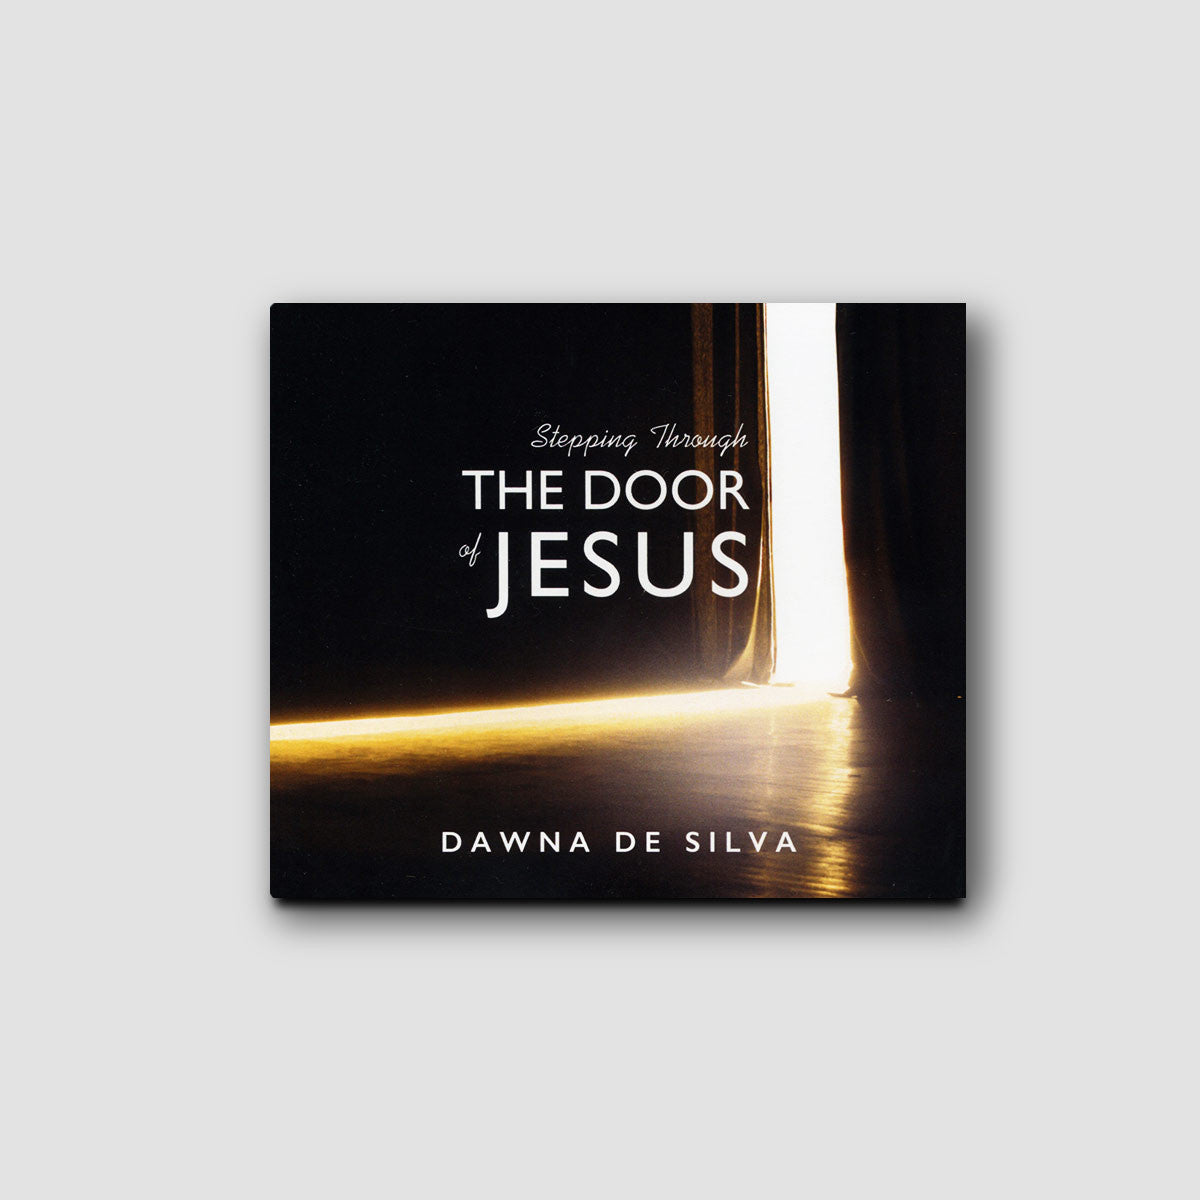 Stepping Through the Door of Jesus